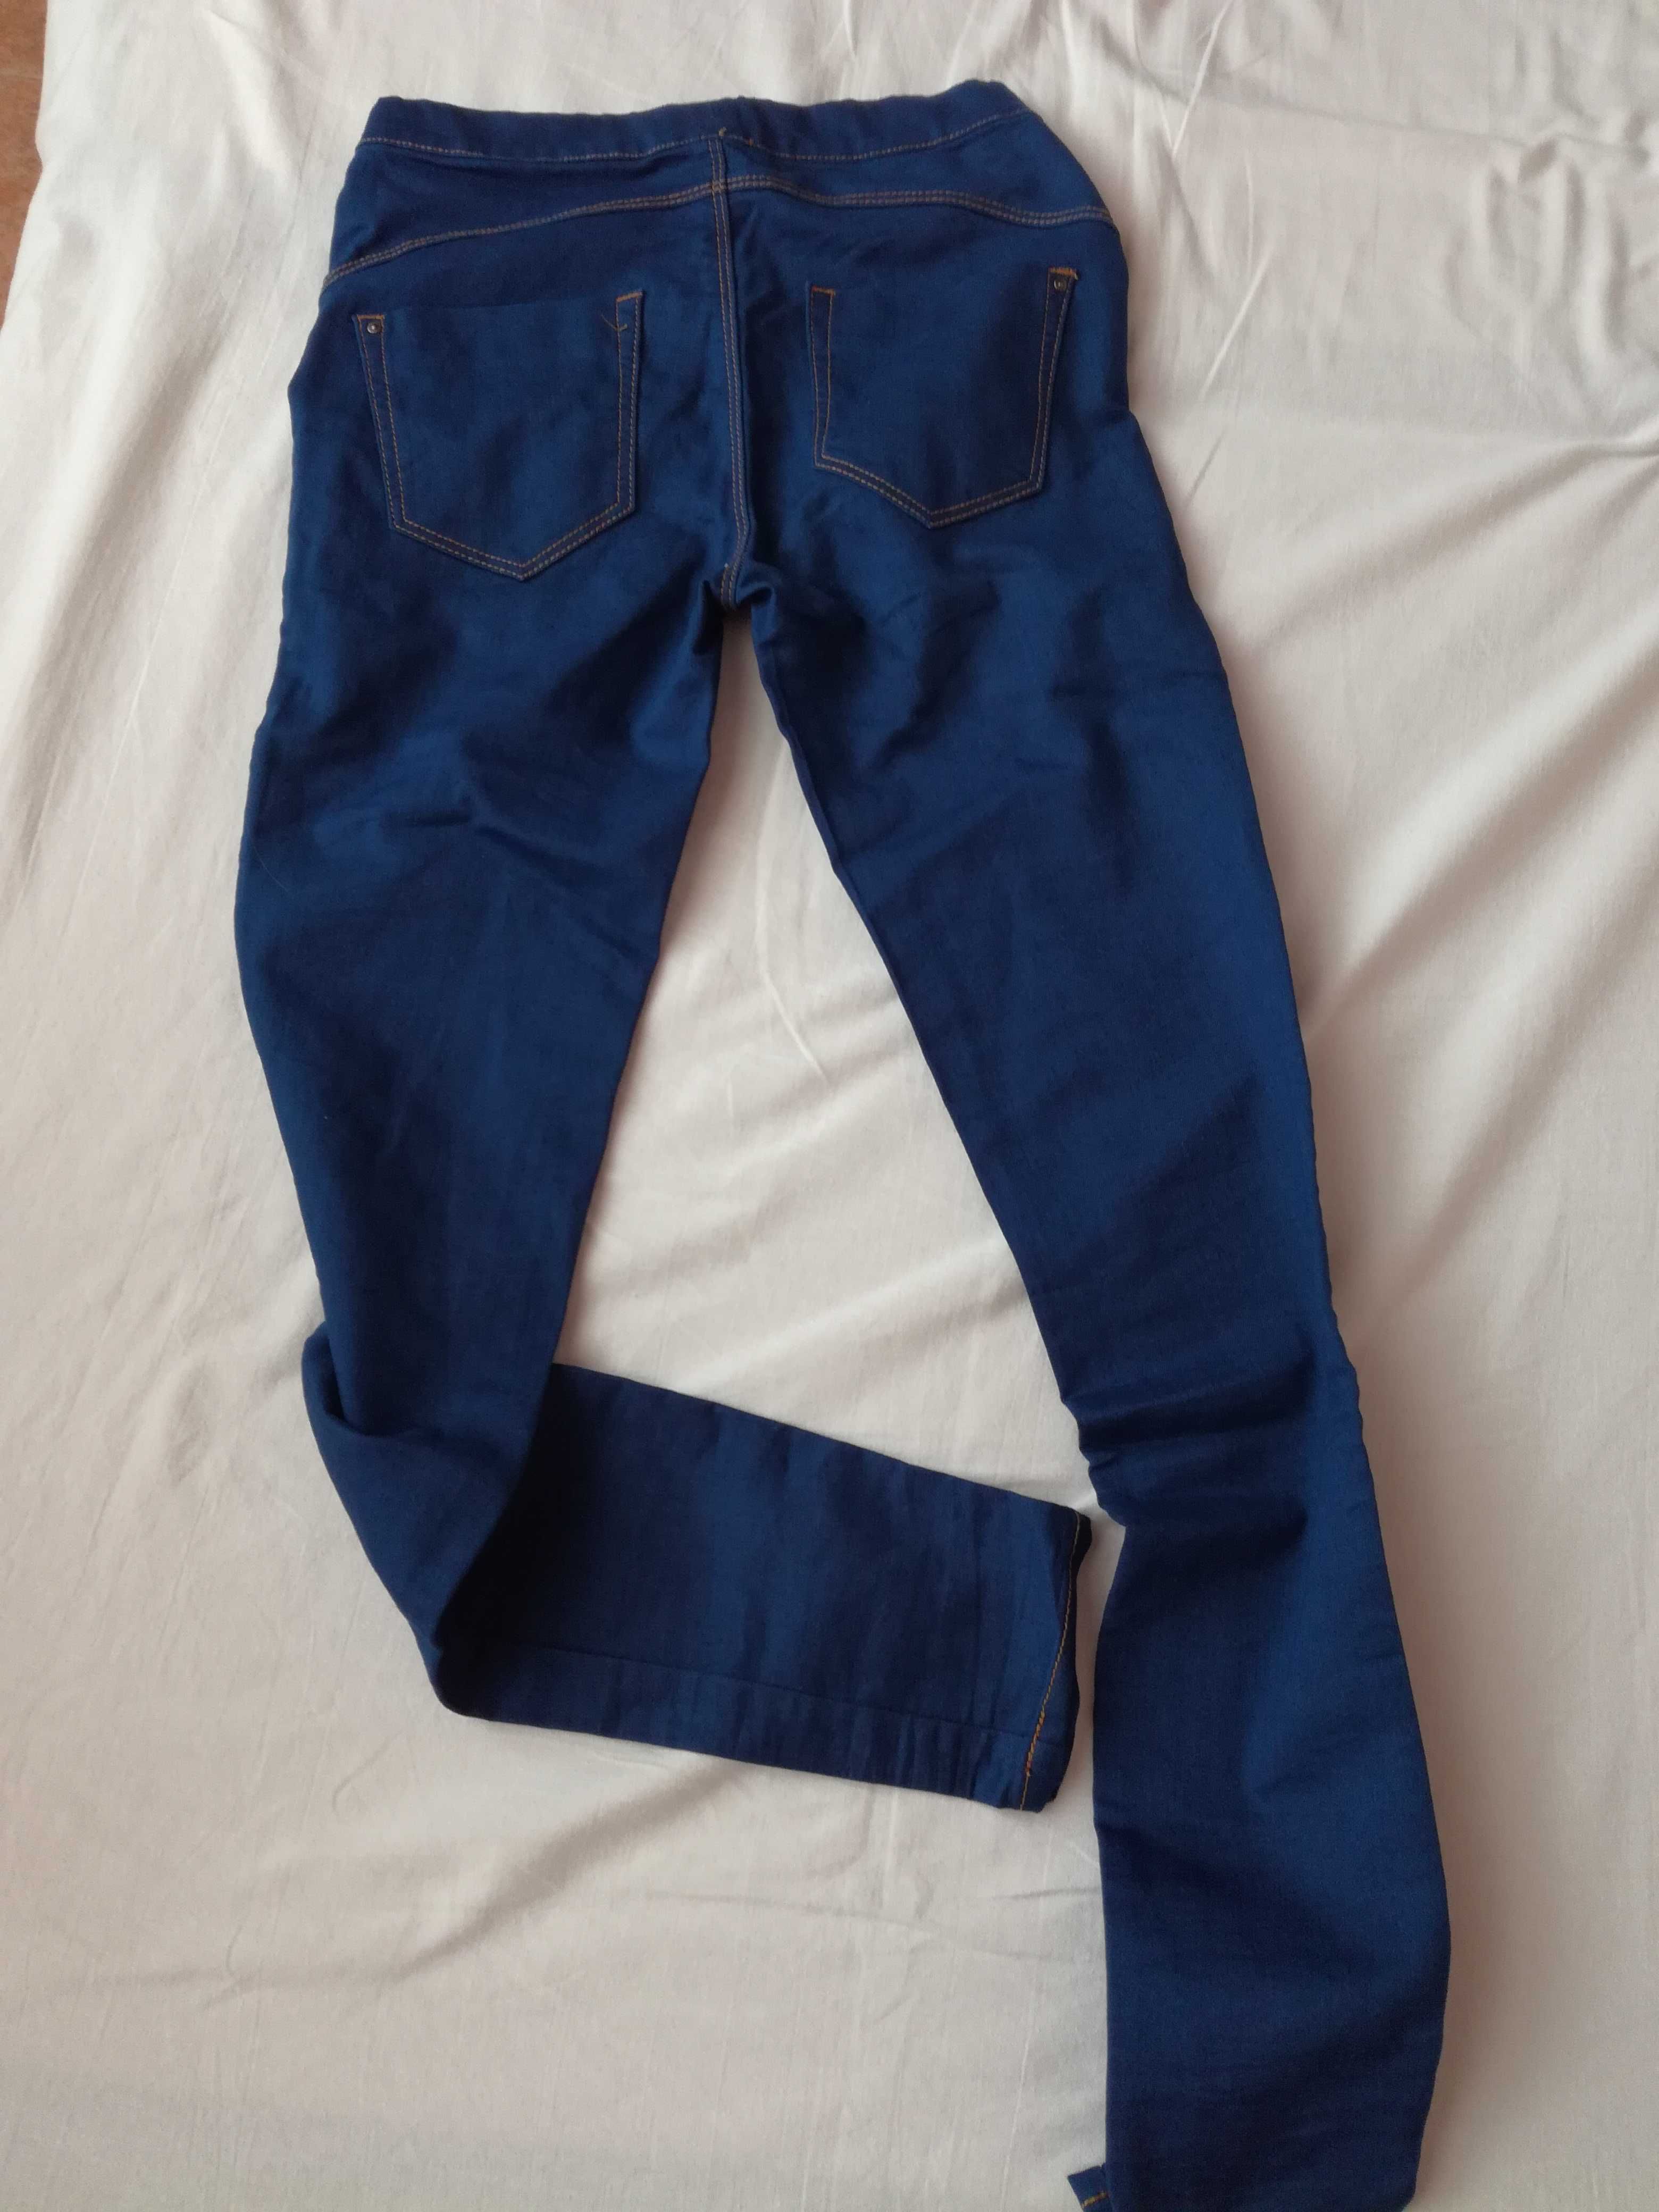 Дамски дънков панталон, размер 32